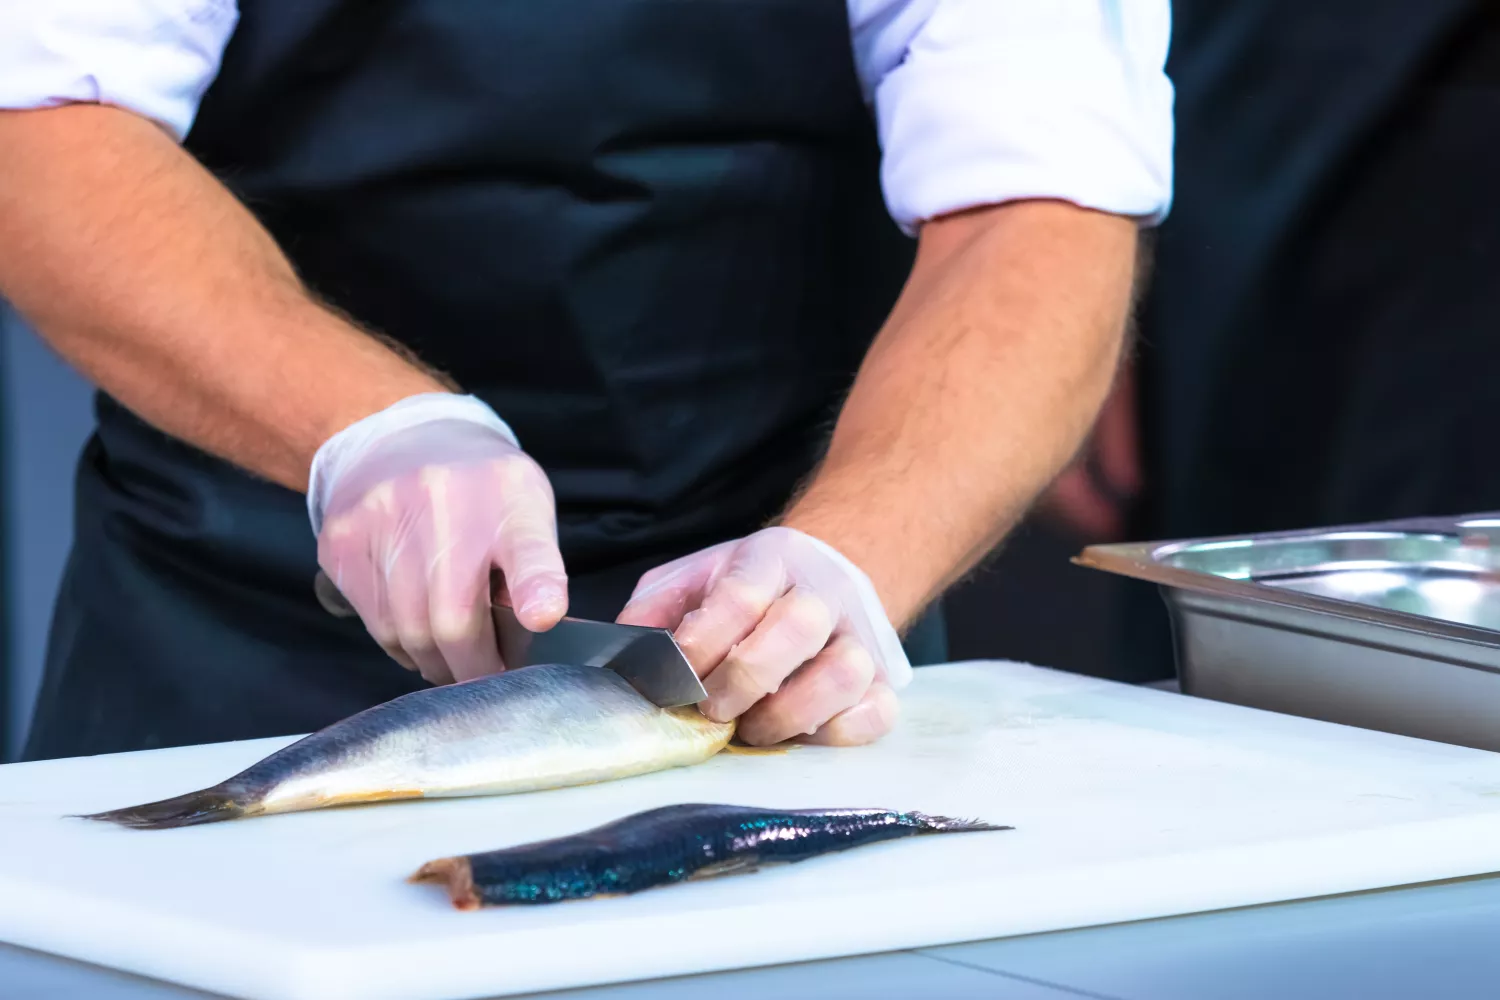 Mitarbeiter bereitet einen Fisch mit dem Messer fachgerecht und hygienisch zu